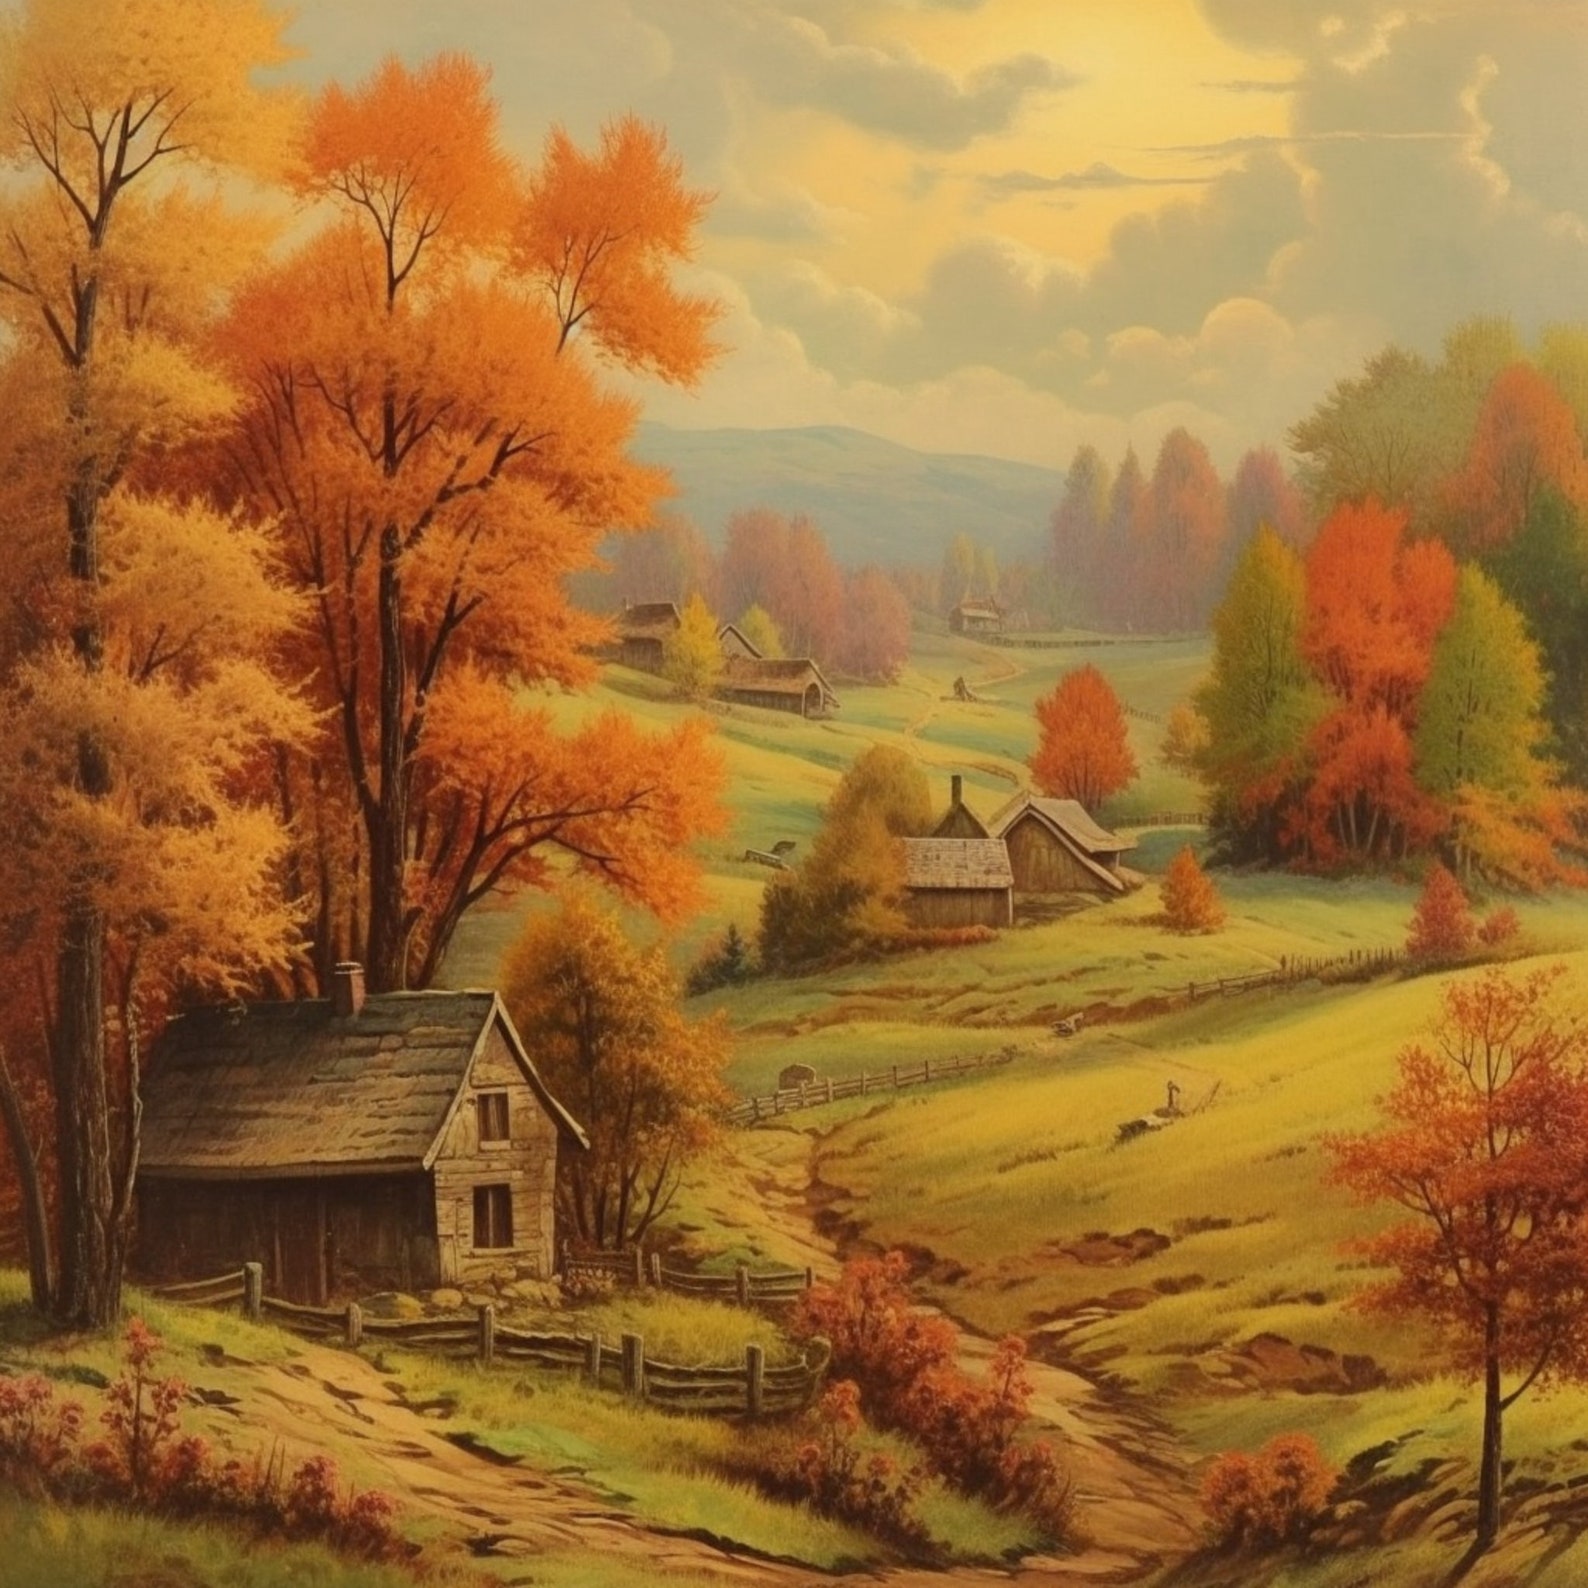 Autumn Landscape Painting Vintage Art Prints Digital Country Horizontal ...